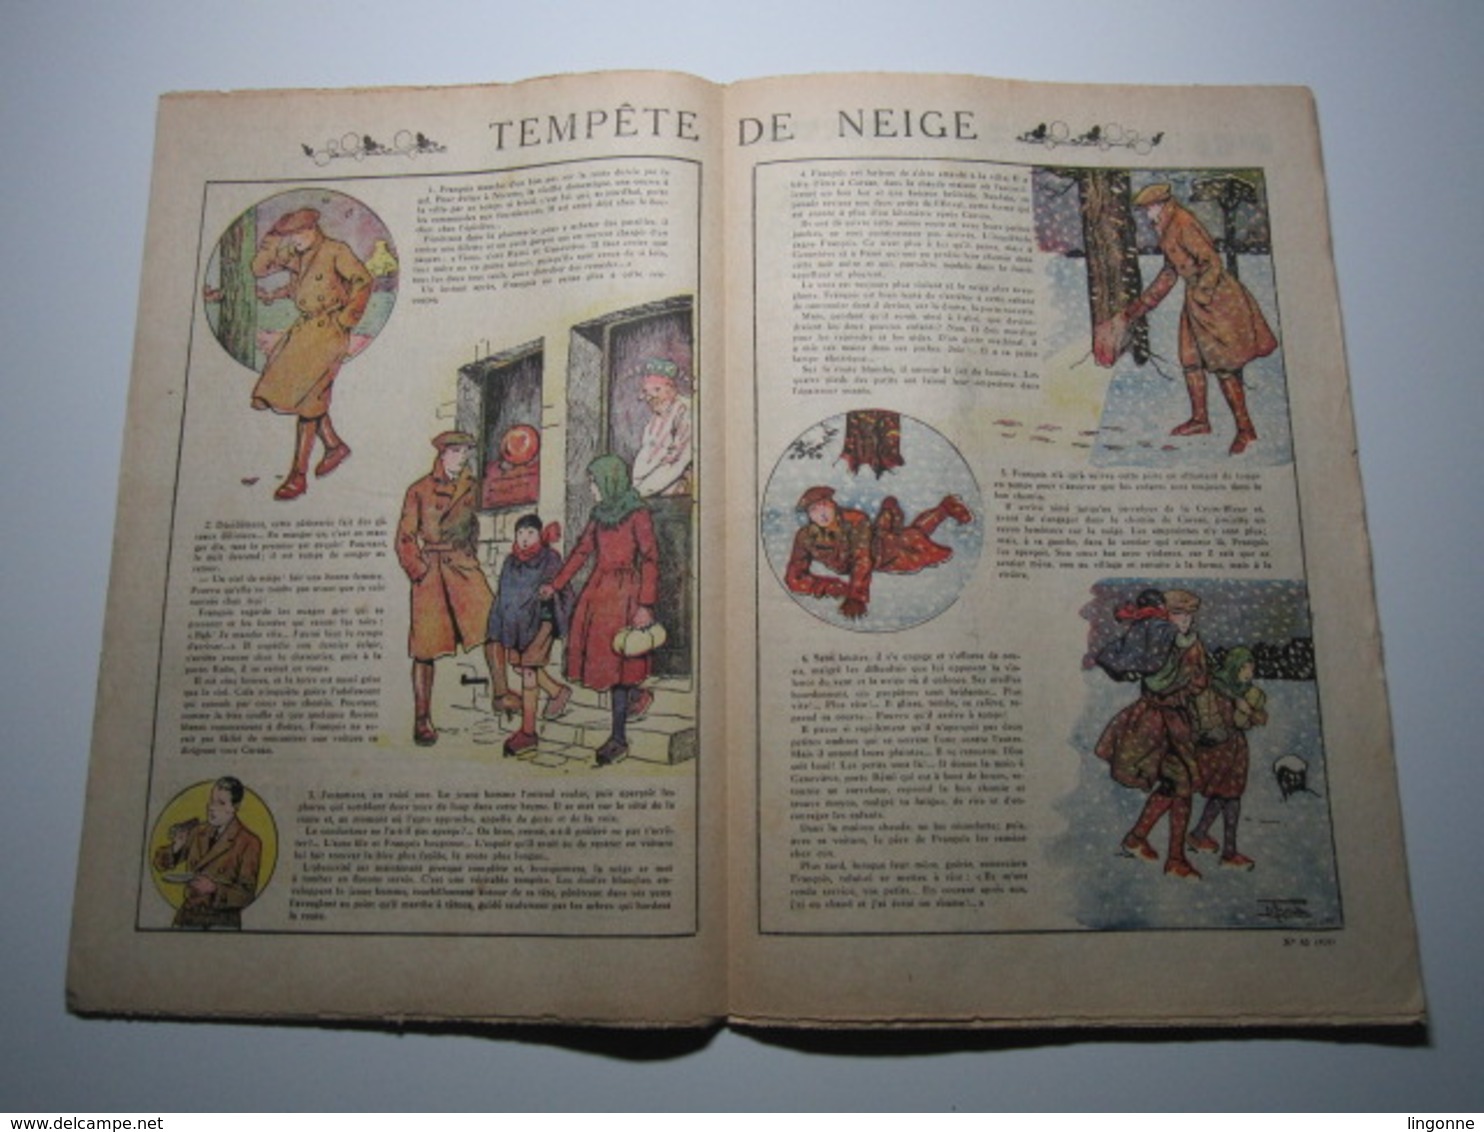 22 Octobre 1933 PIERROT JOURNAL DES GARÇONS 35Cts TEMPÊTE DE NEIGE - Pierrot